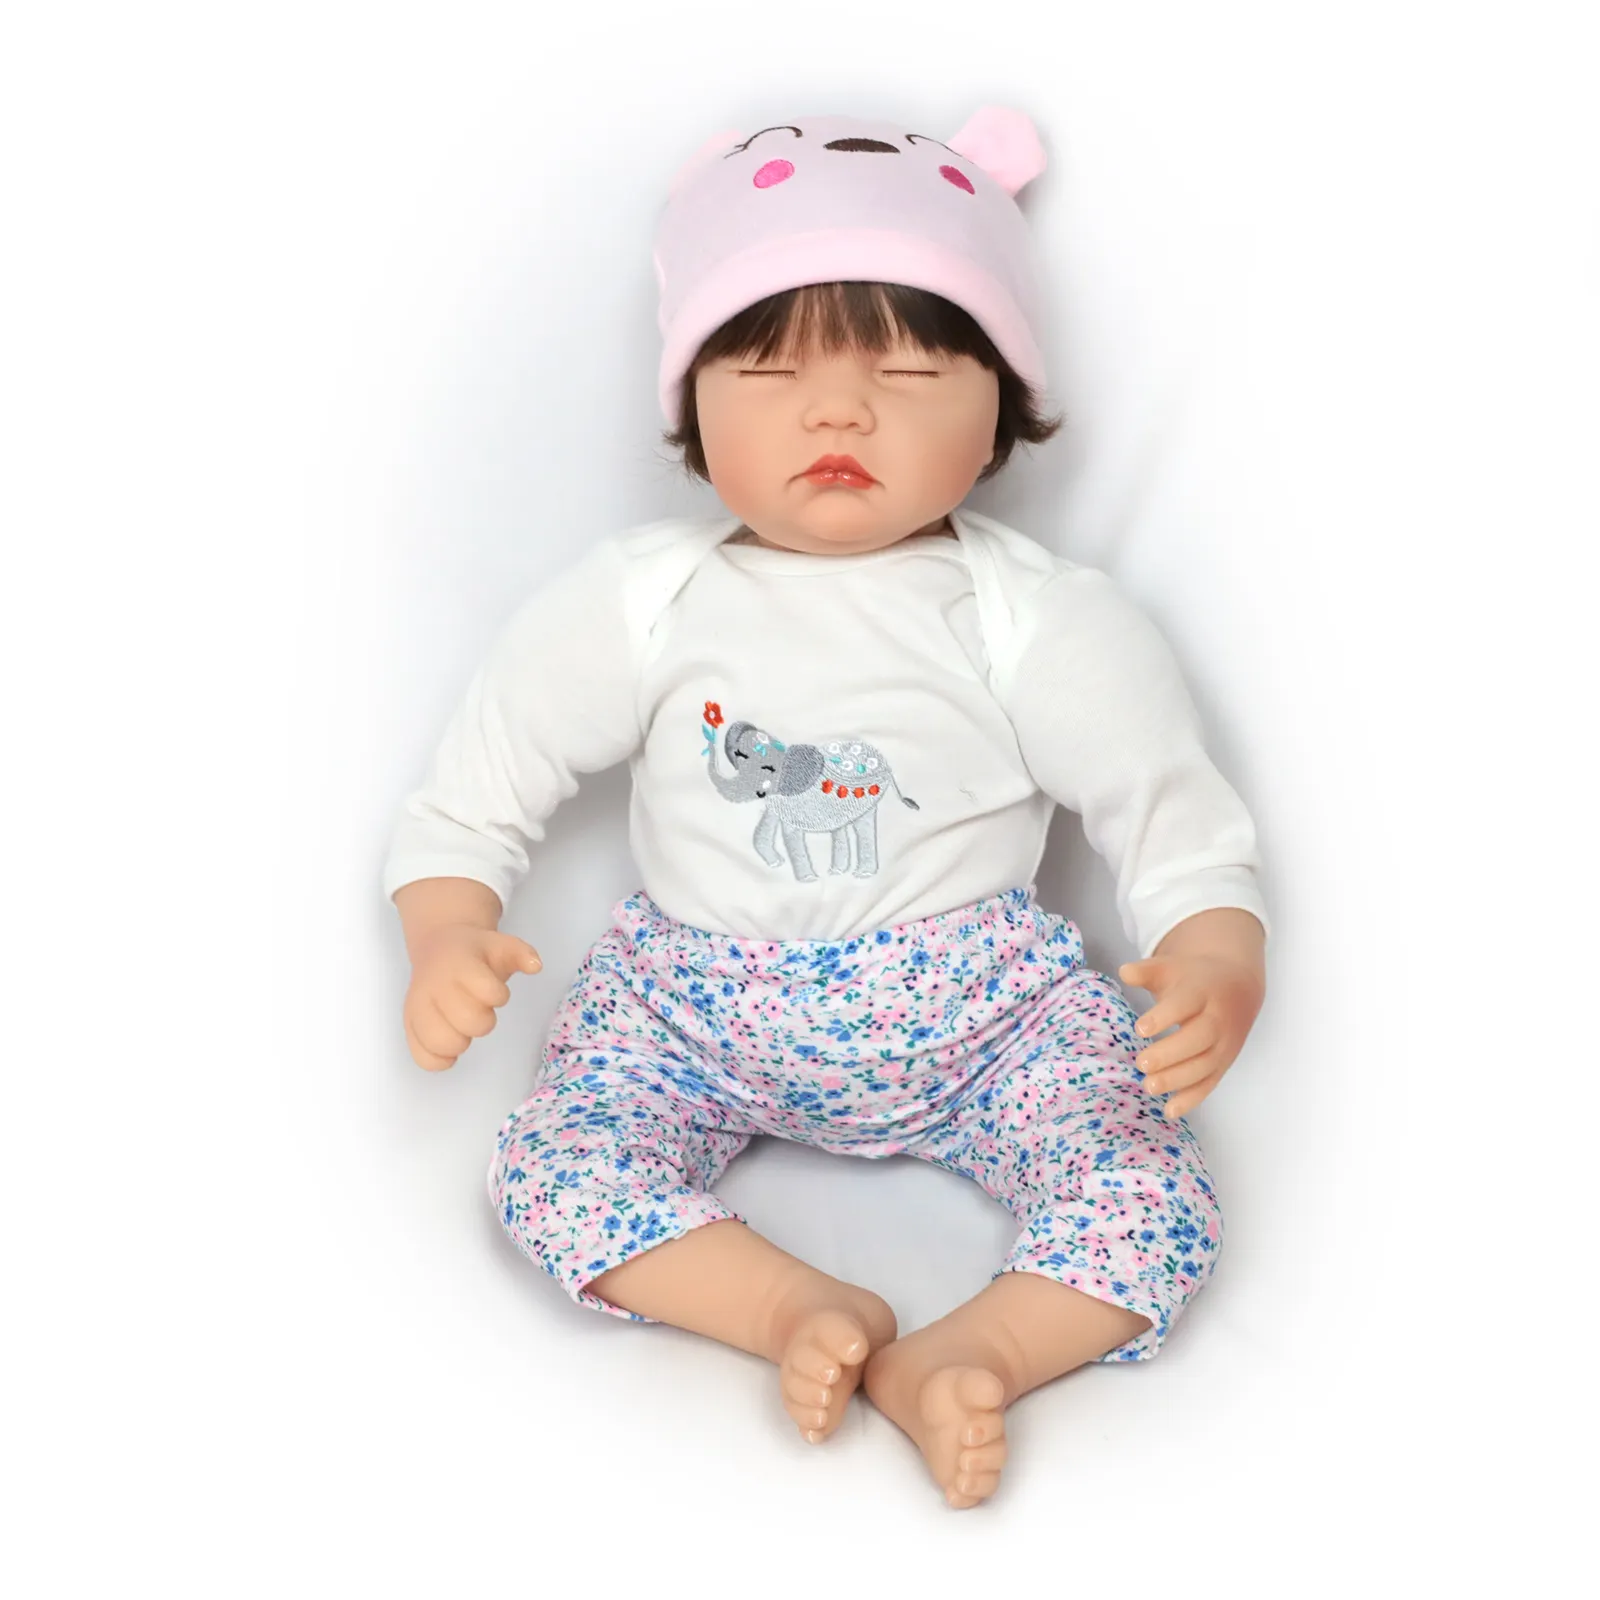 Lifereborn 22 pouces 55cm vrai bébé poupées doux Reborn silicone réaliste reborn bébé poupées à vendre